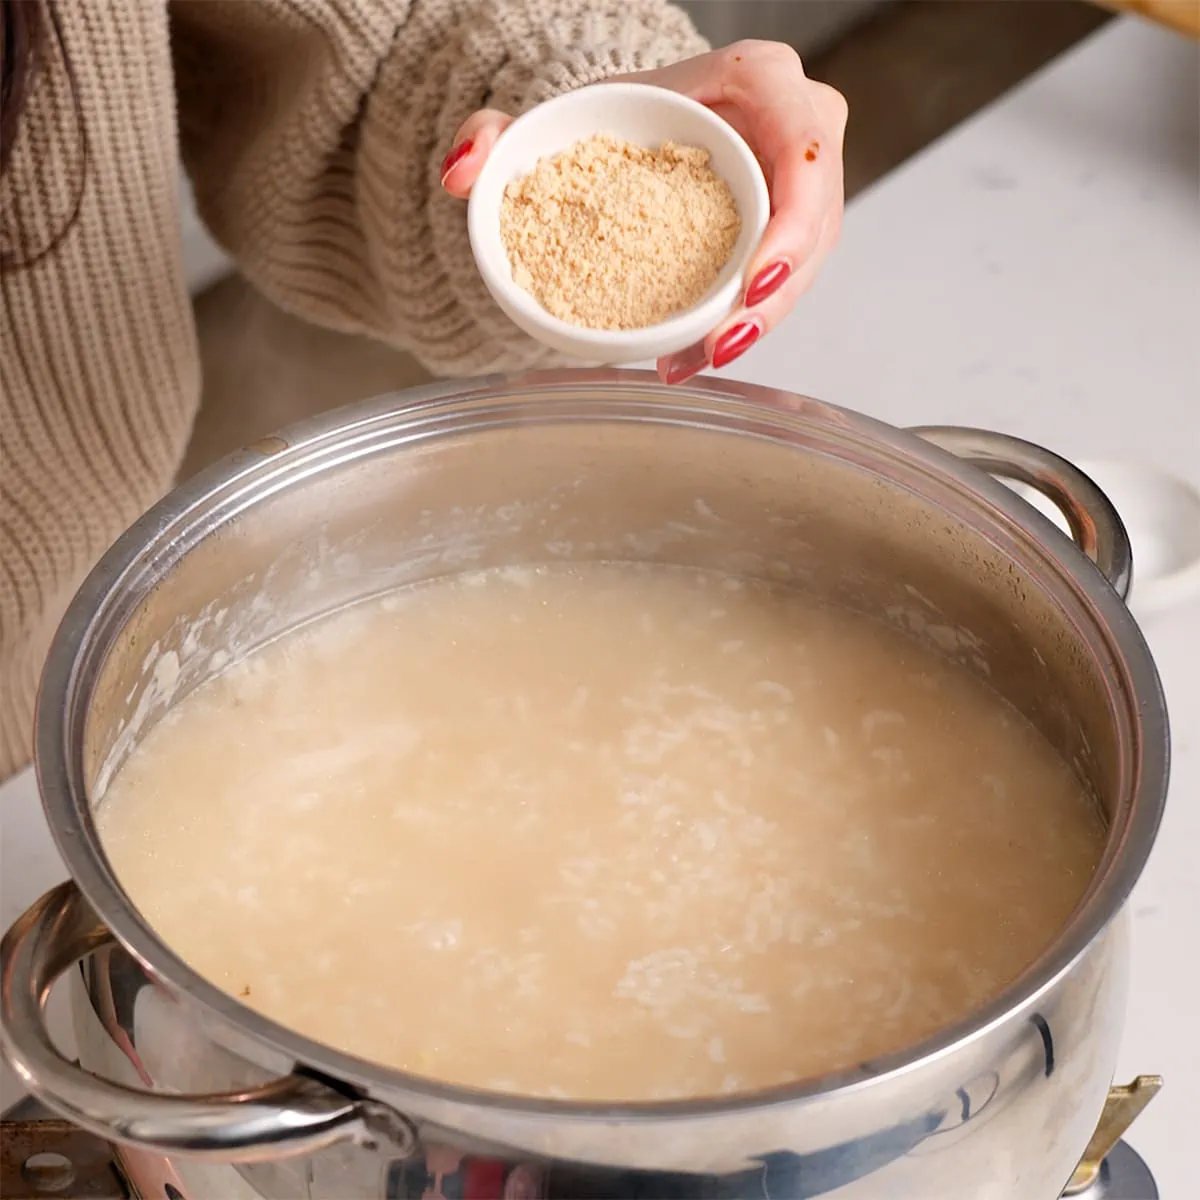 Seasoning Vietnamese chicken rice porridge to taste with chicken bouillon powder.